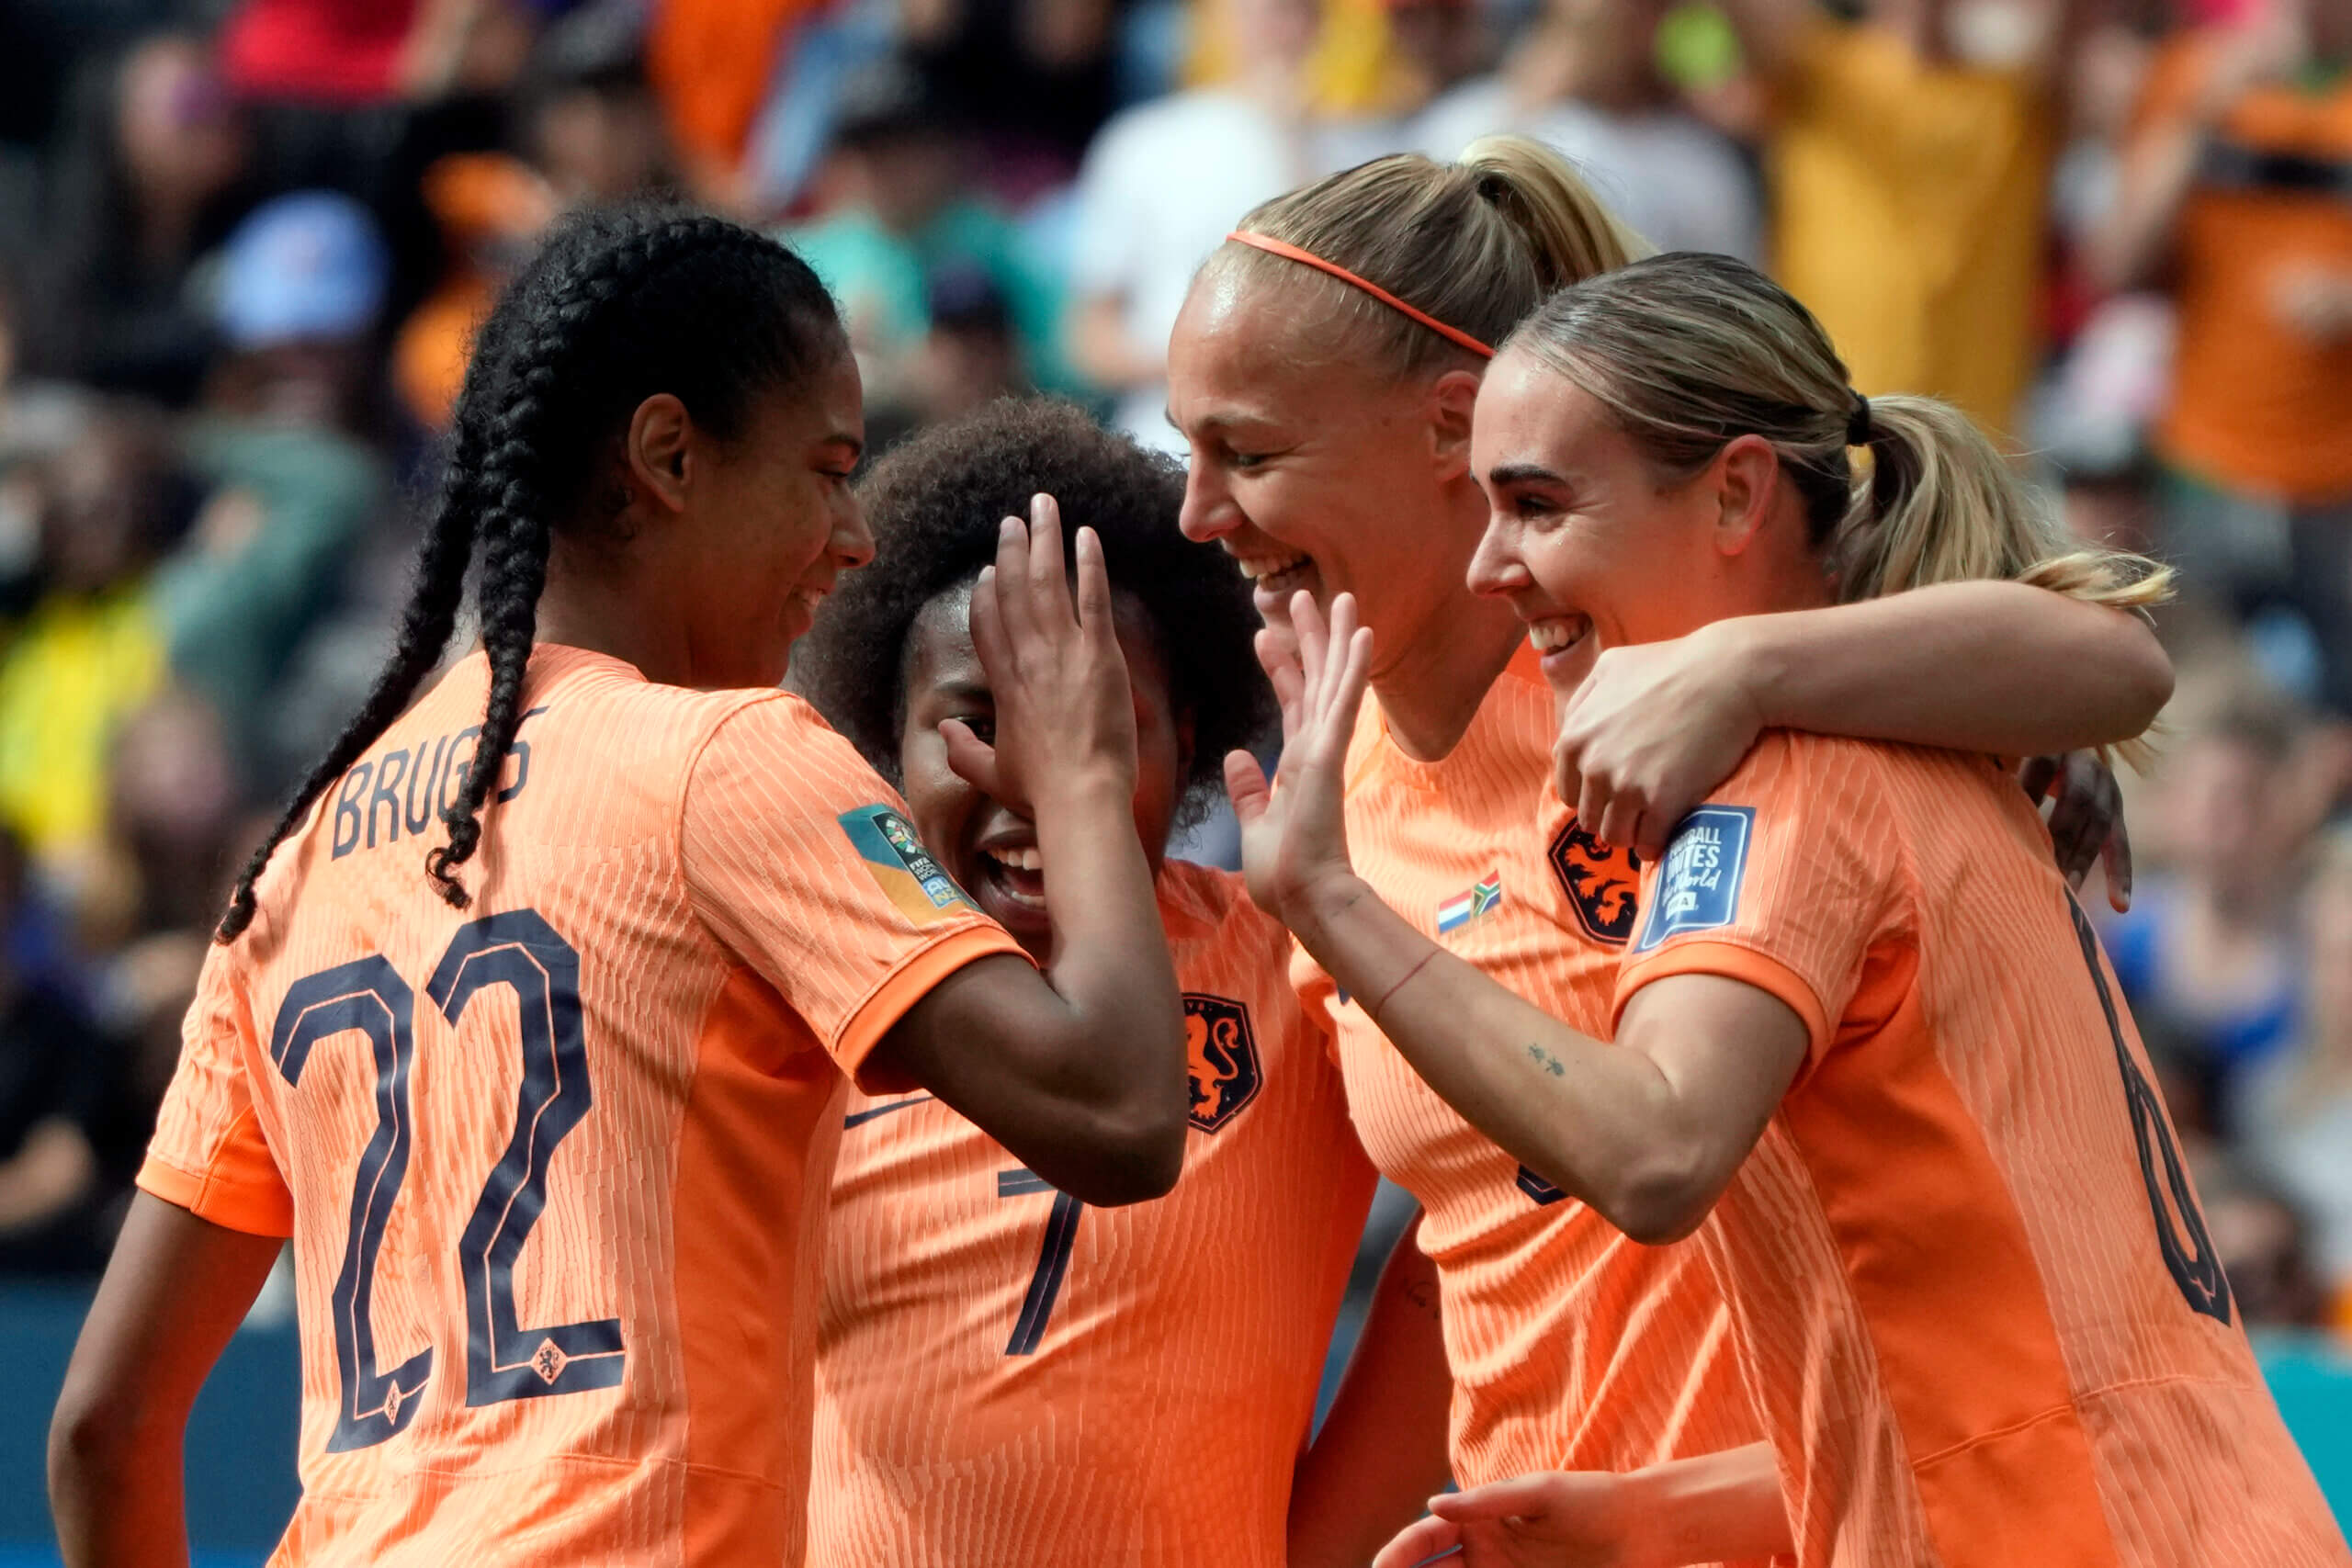 Netherlands Women's World Cup